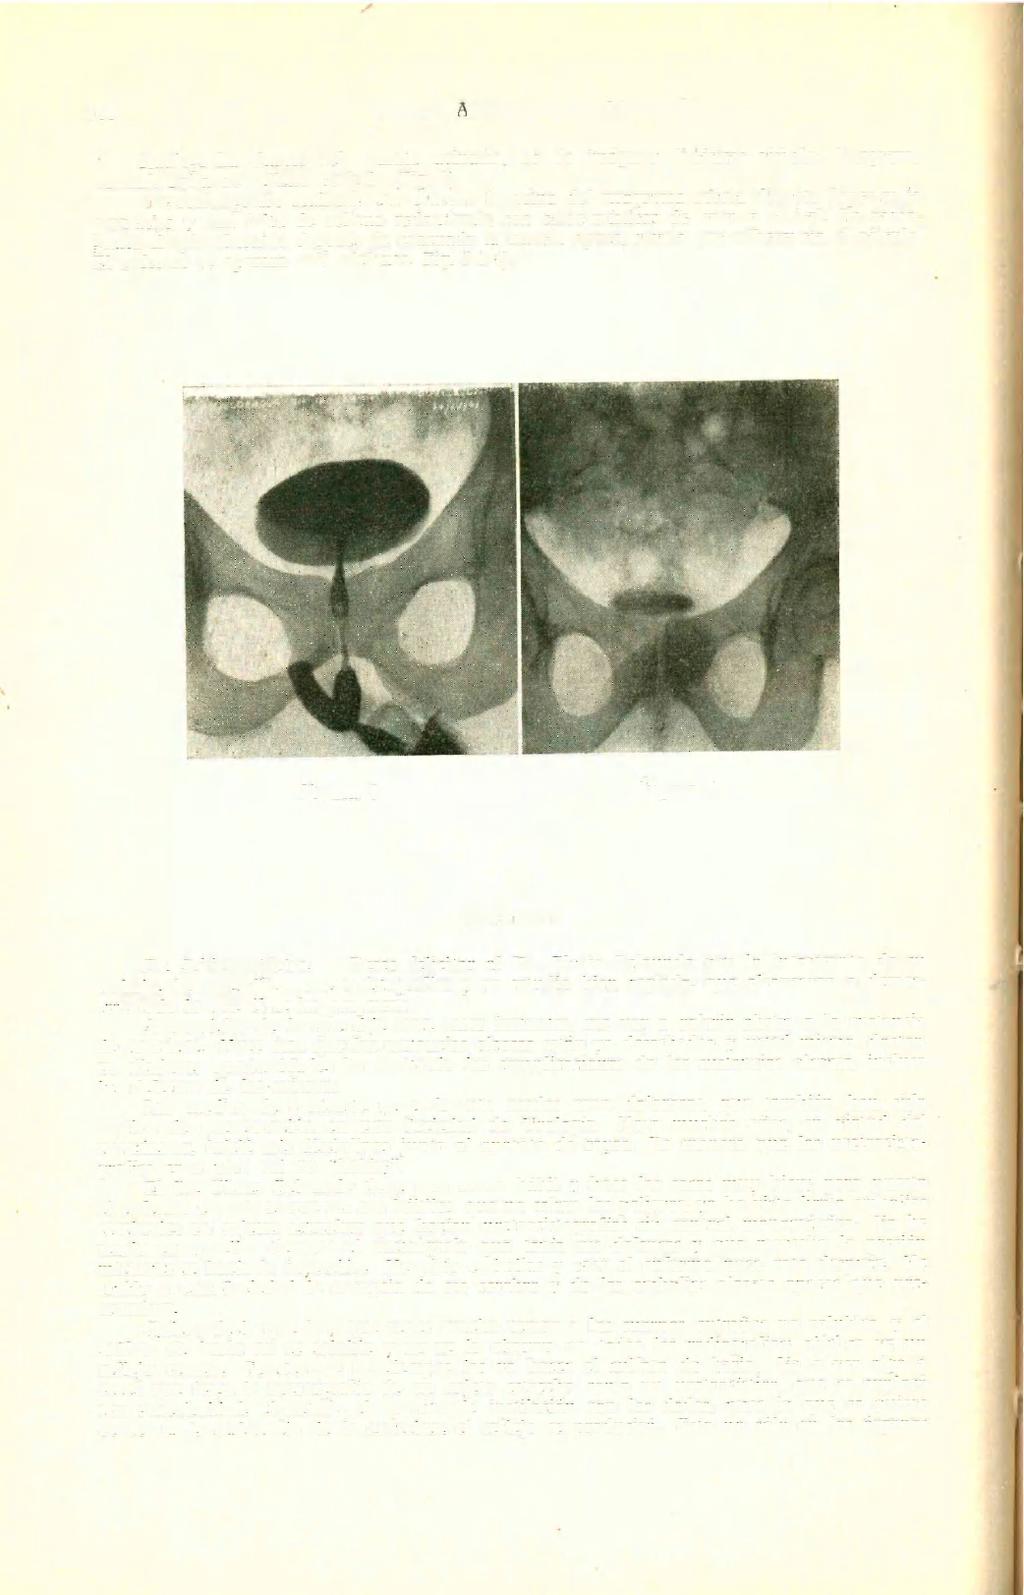 160 REVISTA ARGENTINA DE UROLOGÍA Radiografía simple del aparato urinario, no da imágenes litiásicas visibles. Urograma normal. Falta de relleno vesical. (Fig. 1).